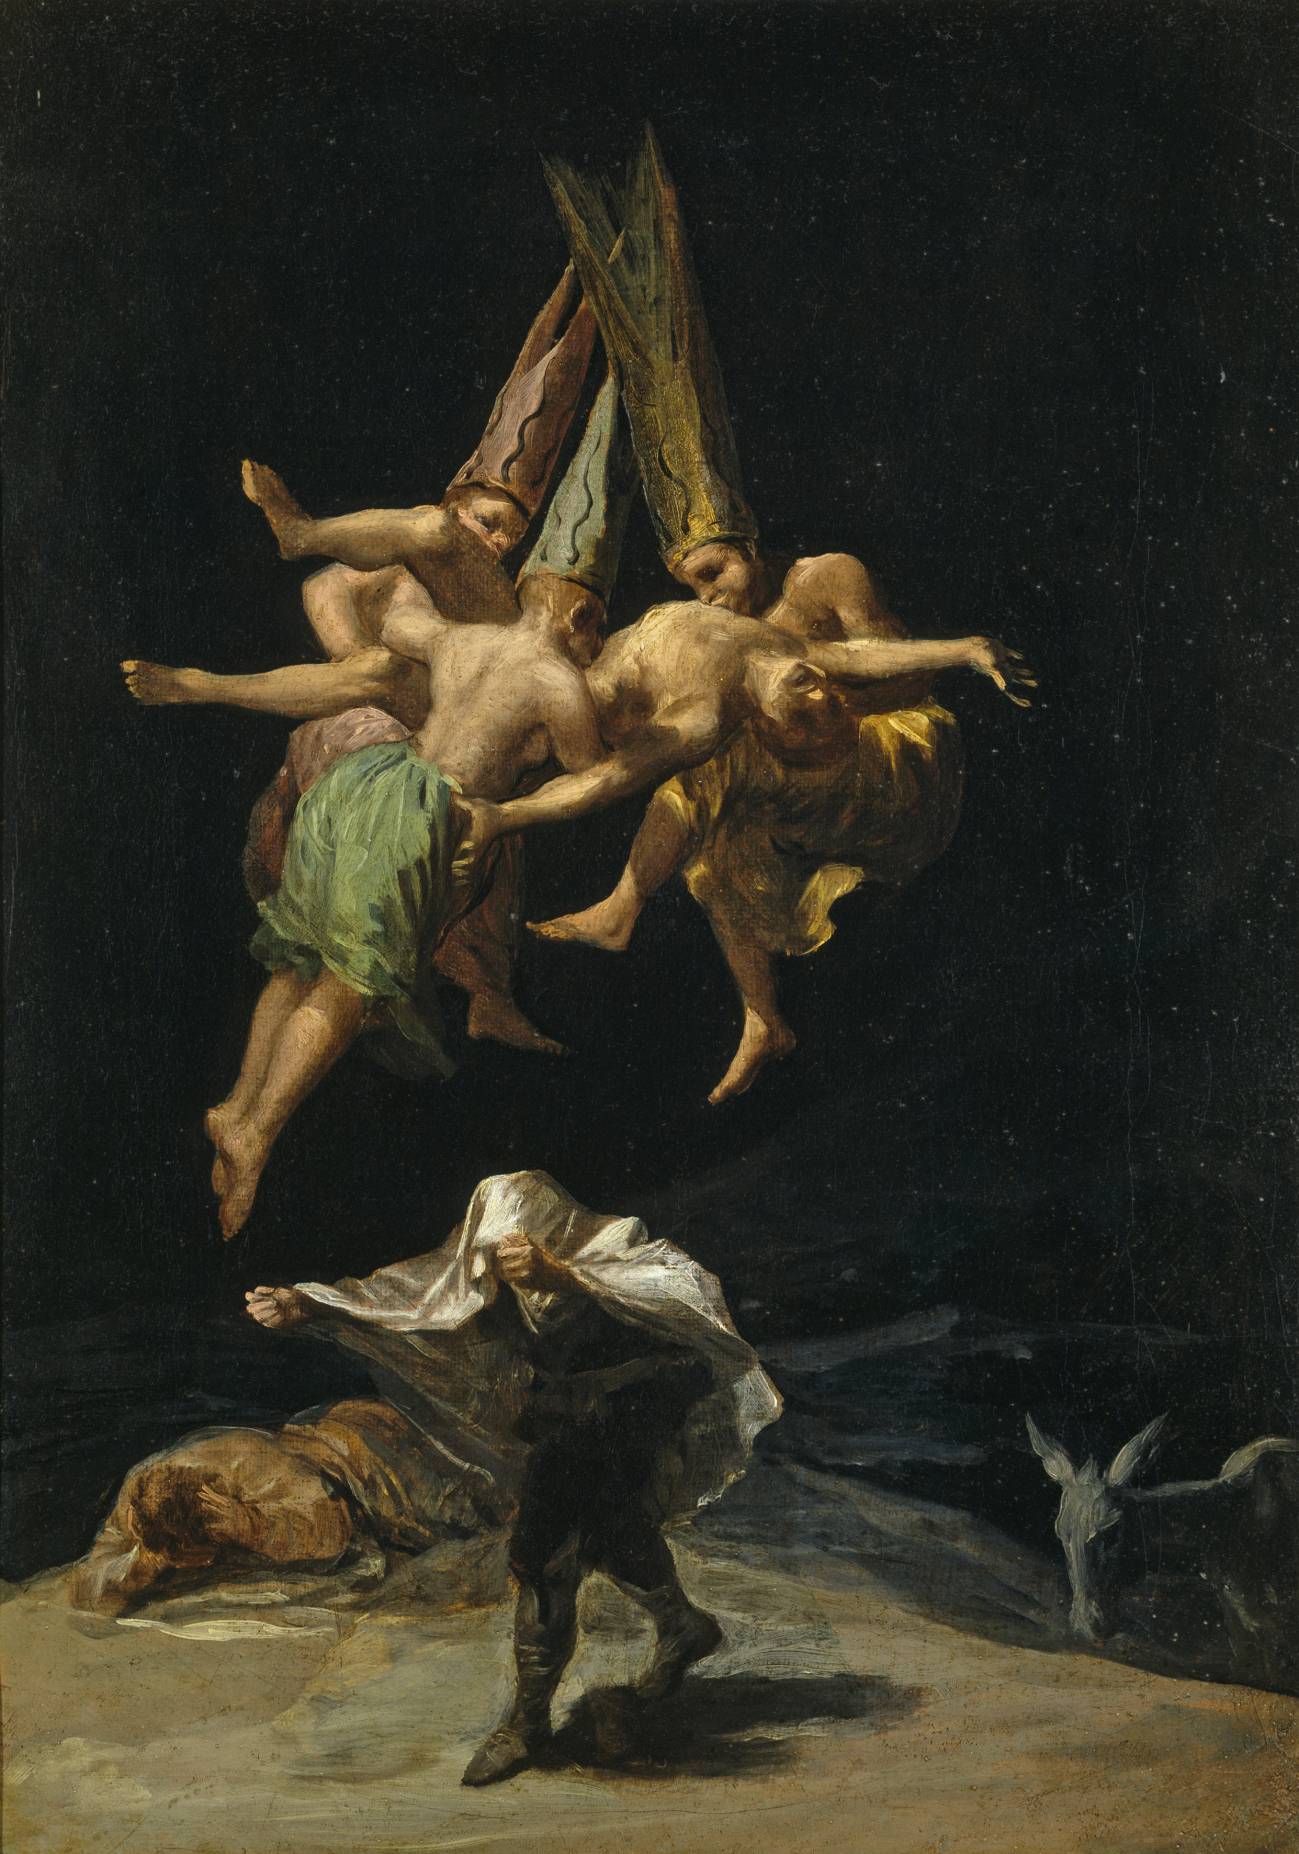 Goya, encumbrado como padre de la pintura moderna con una macro-exposición en su Zaragoza natal (y II)